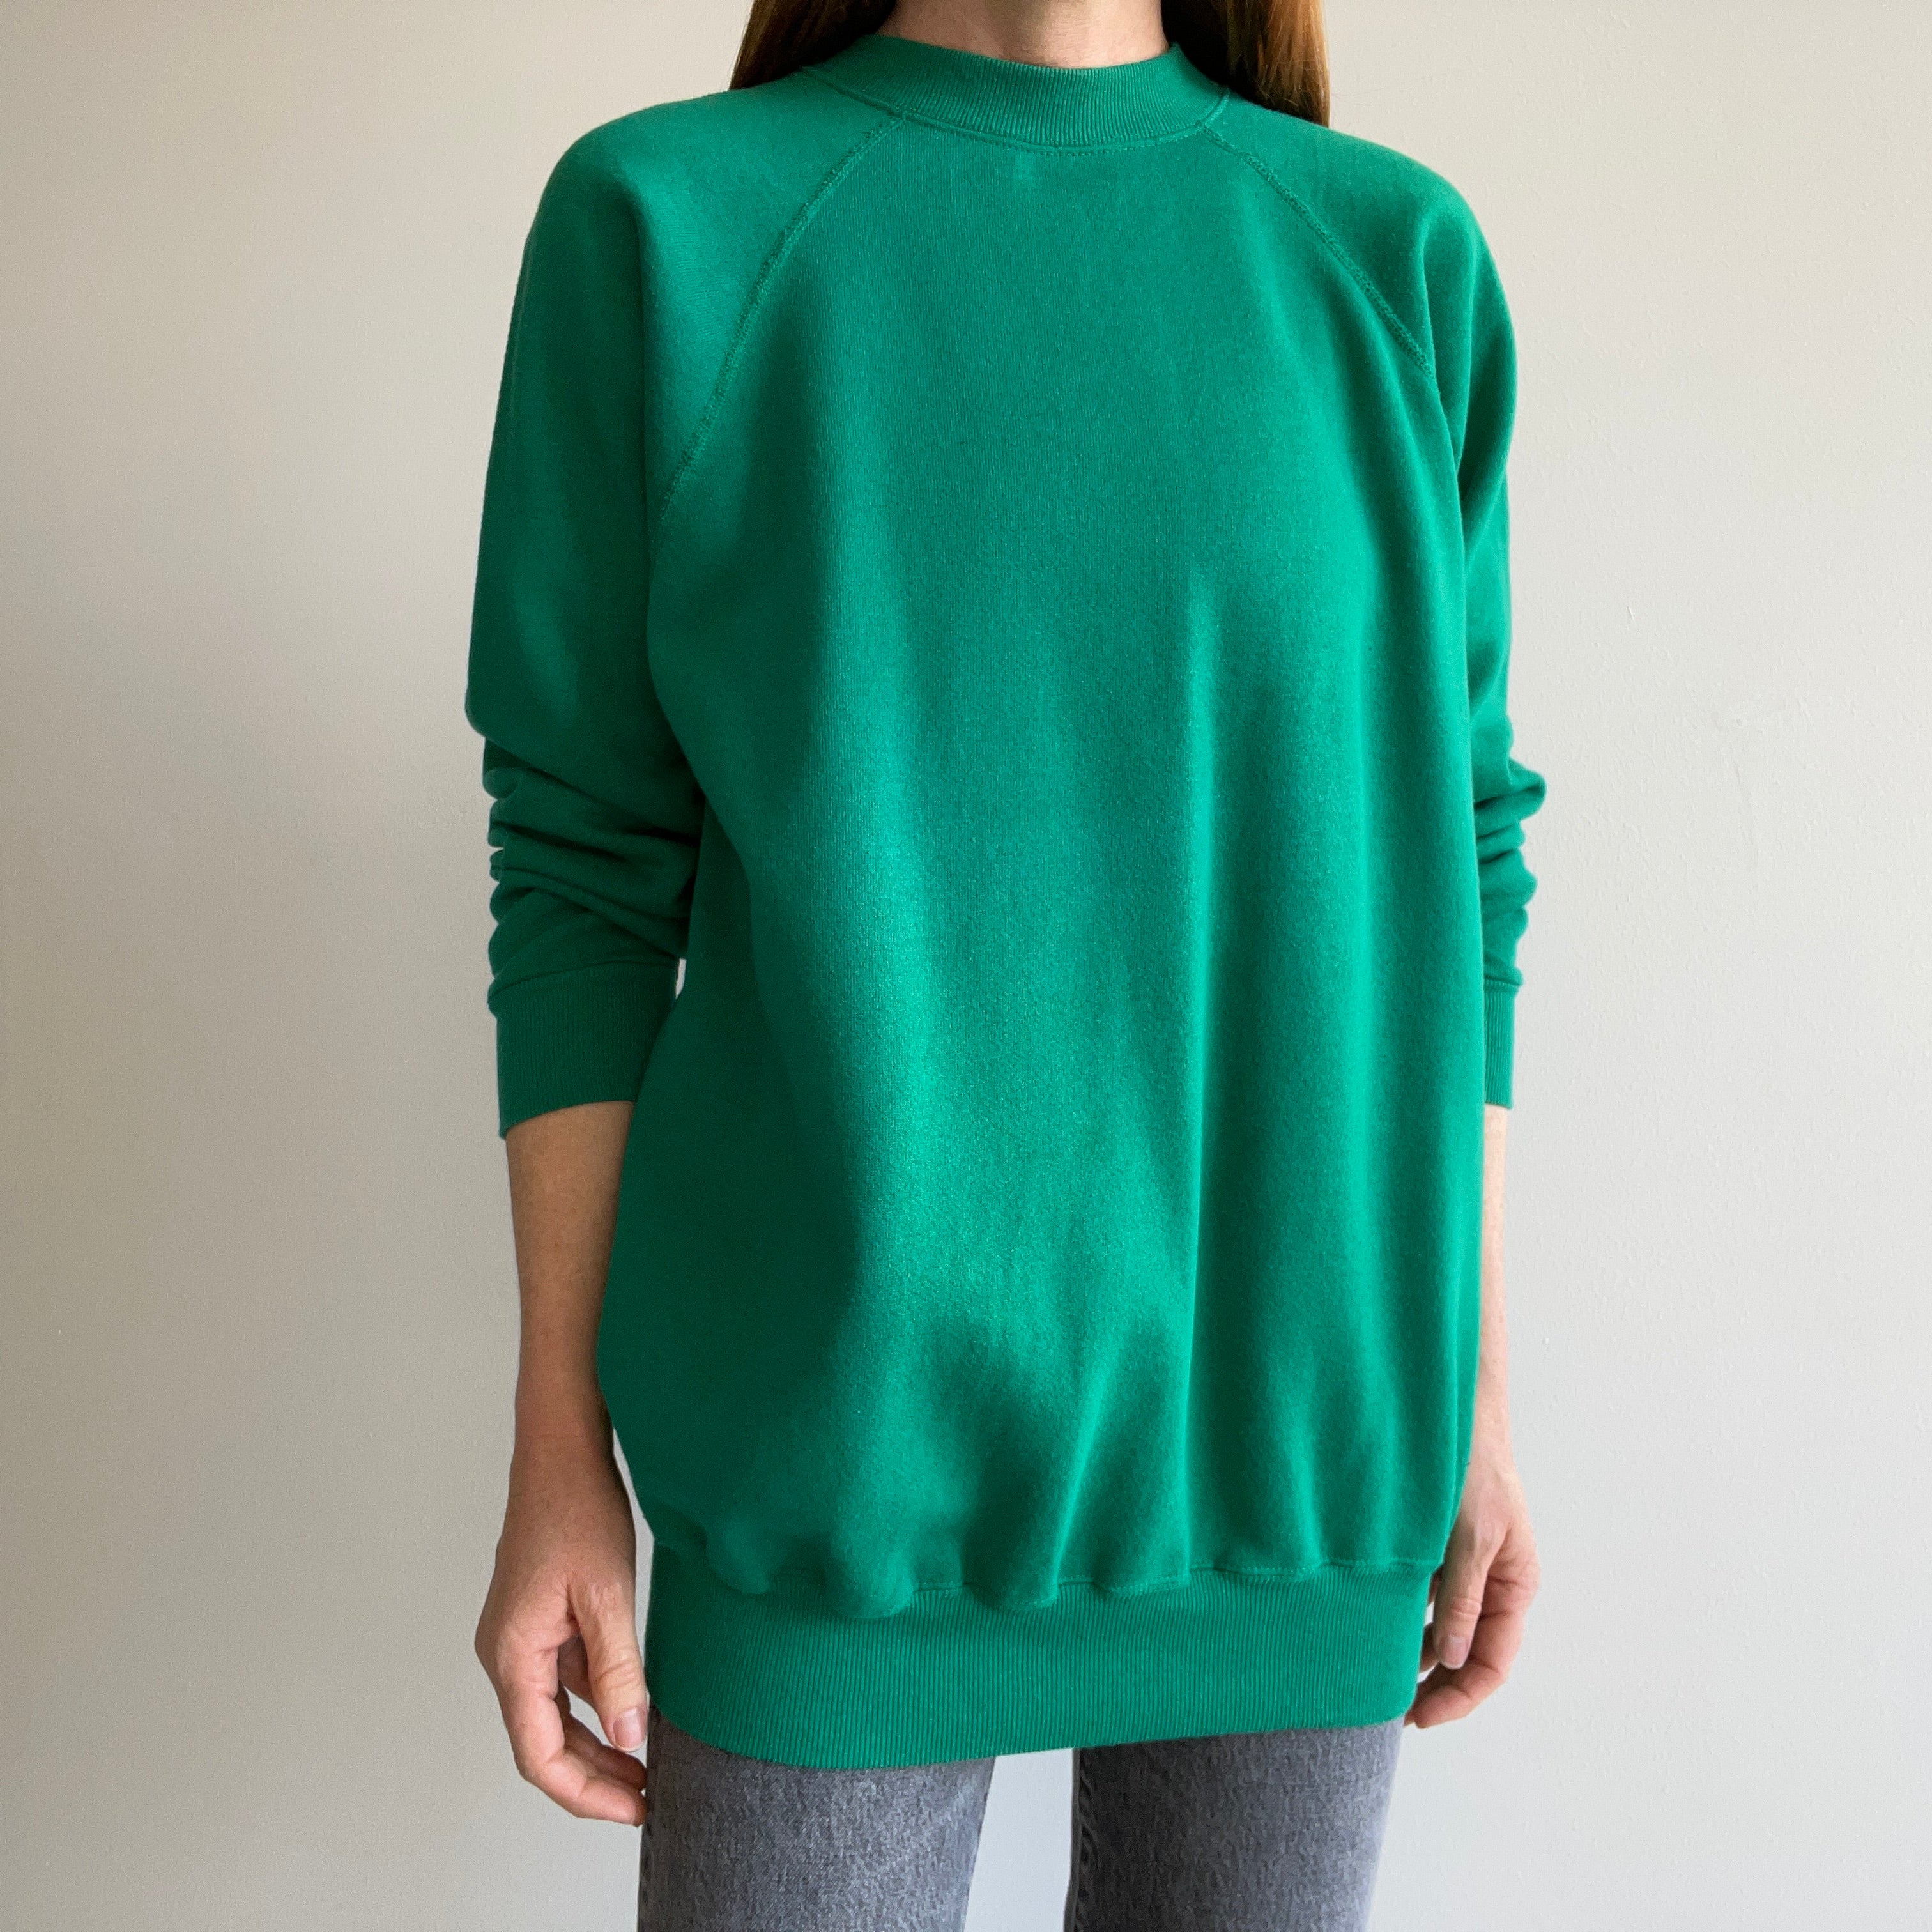 1980s Blank Kelly Green Longer Sweatshirt by Hanes